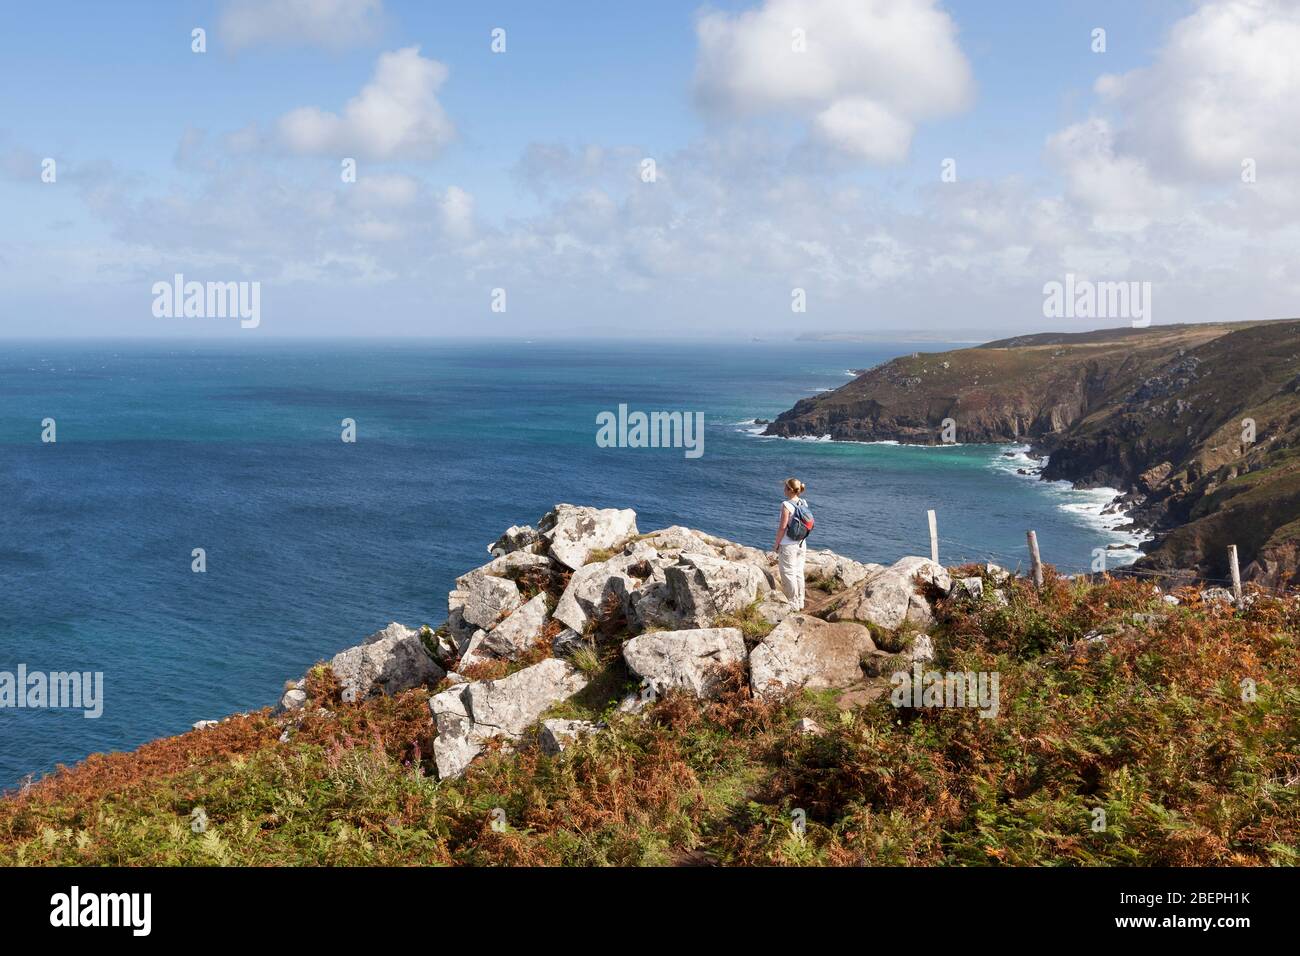 Frau auf einem felsigen Felsen stehend, die die atemberaubende Küstenlandschaft nahe St Ives in Cornwall, England, Großbritannien, betrachtet Stockfoto